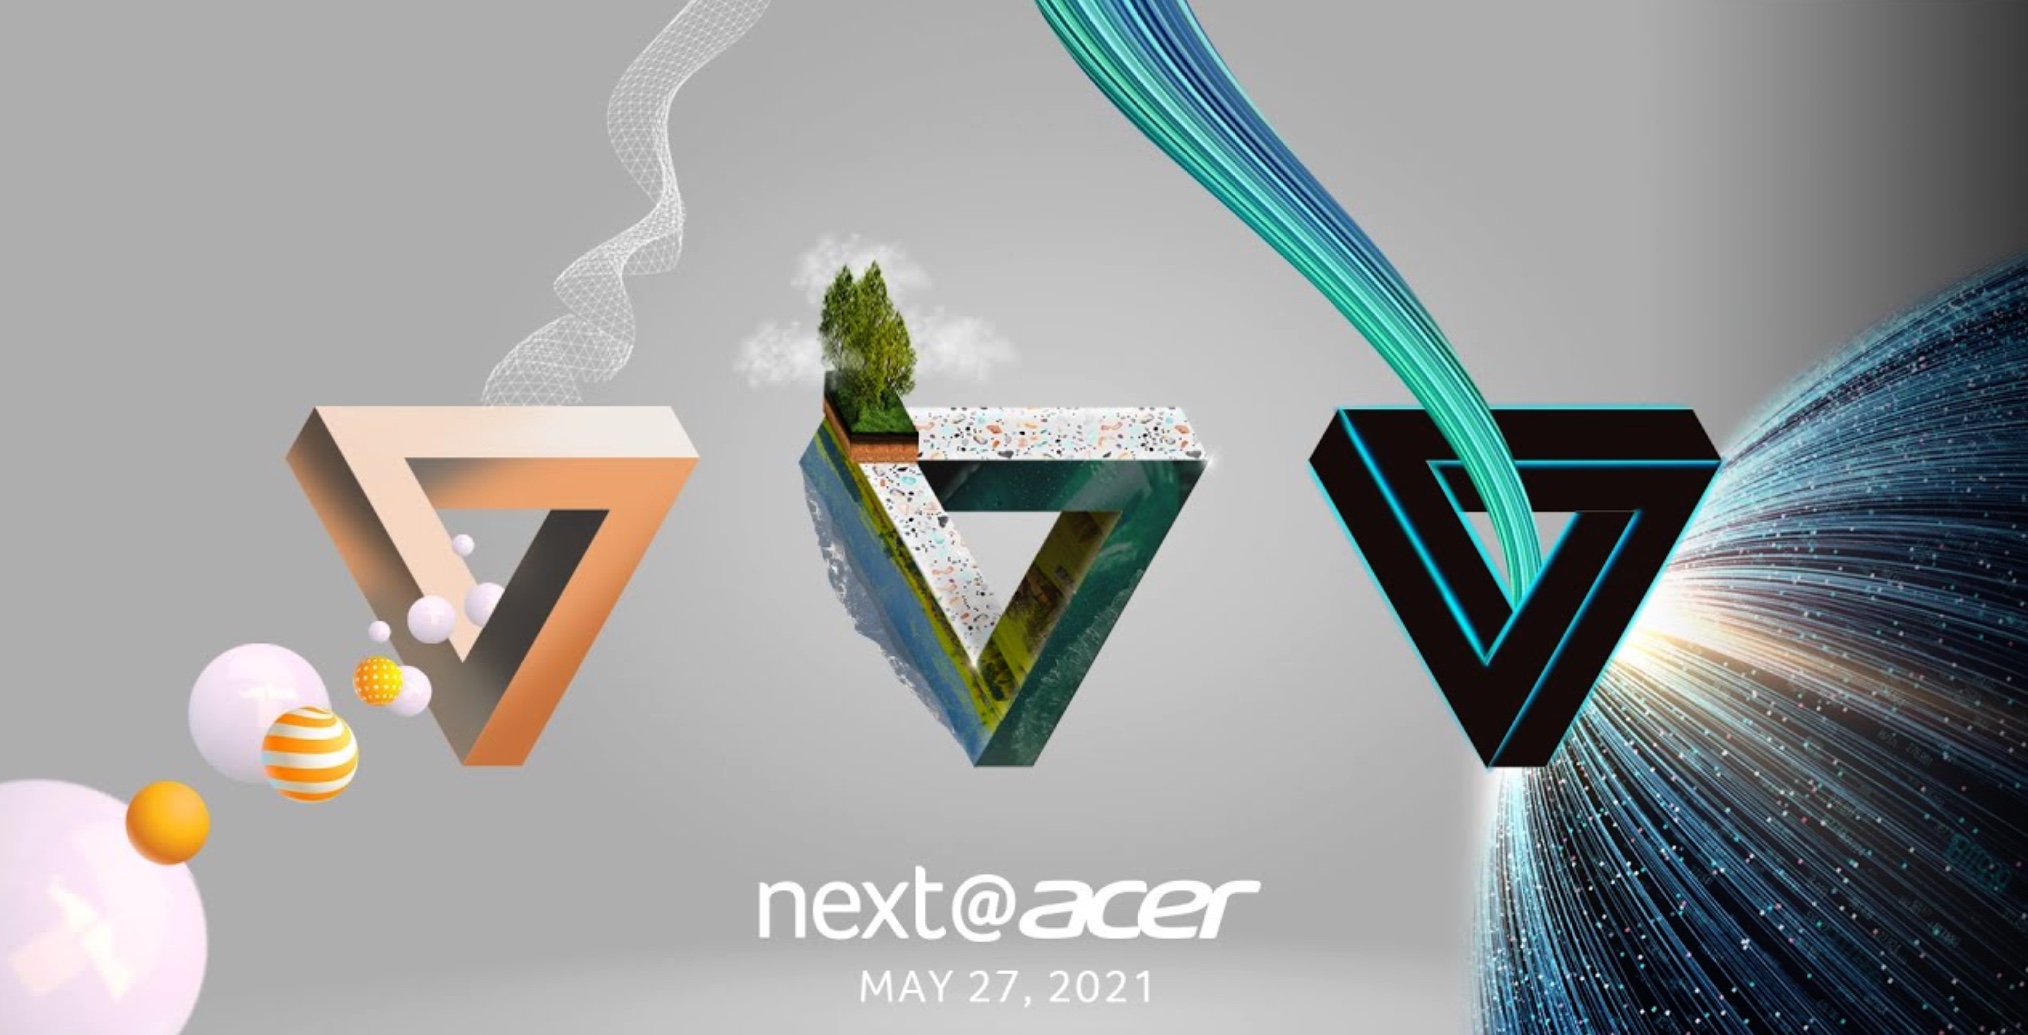 Comment suivre la conférence Next@Acer 2021 sur Clubic ?